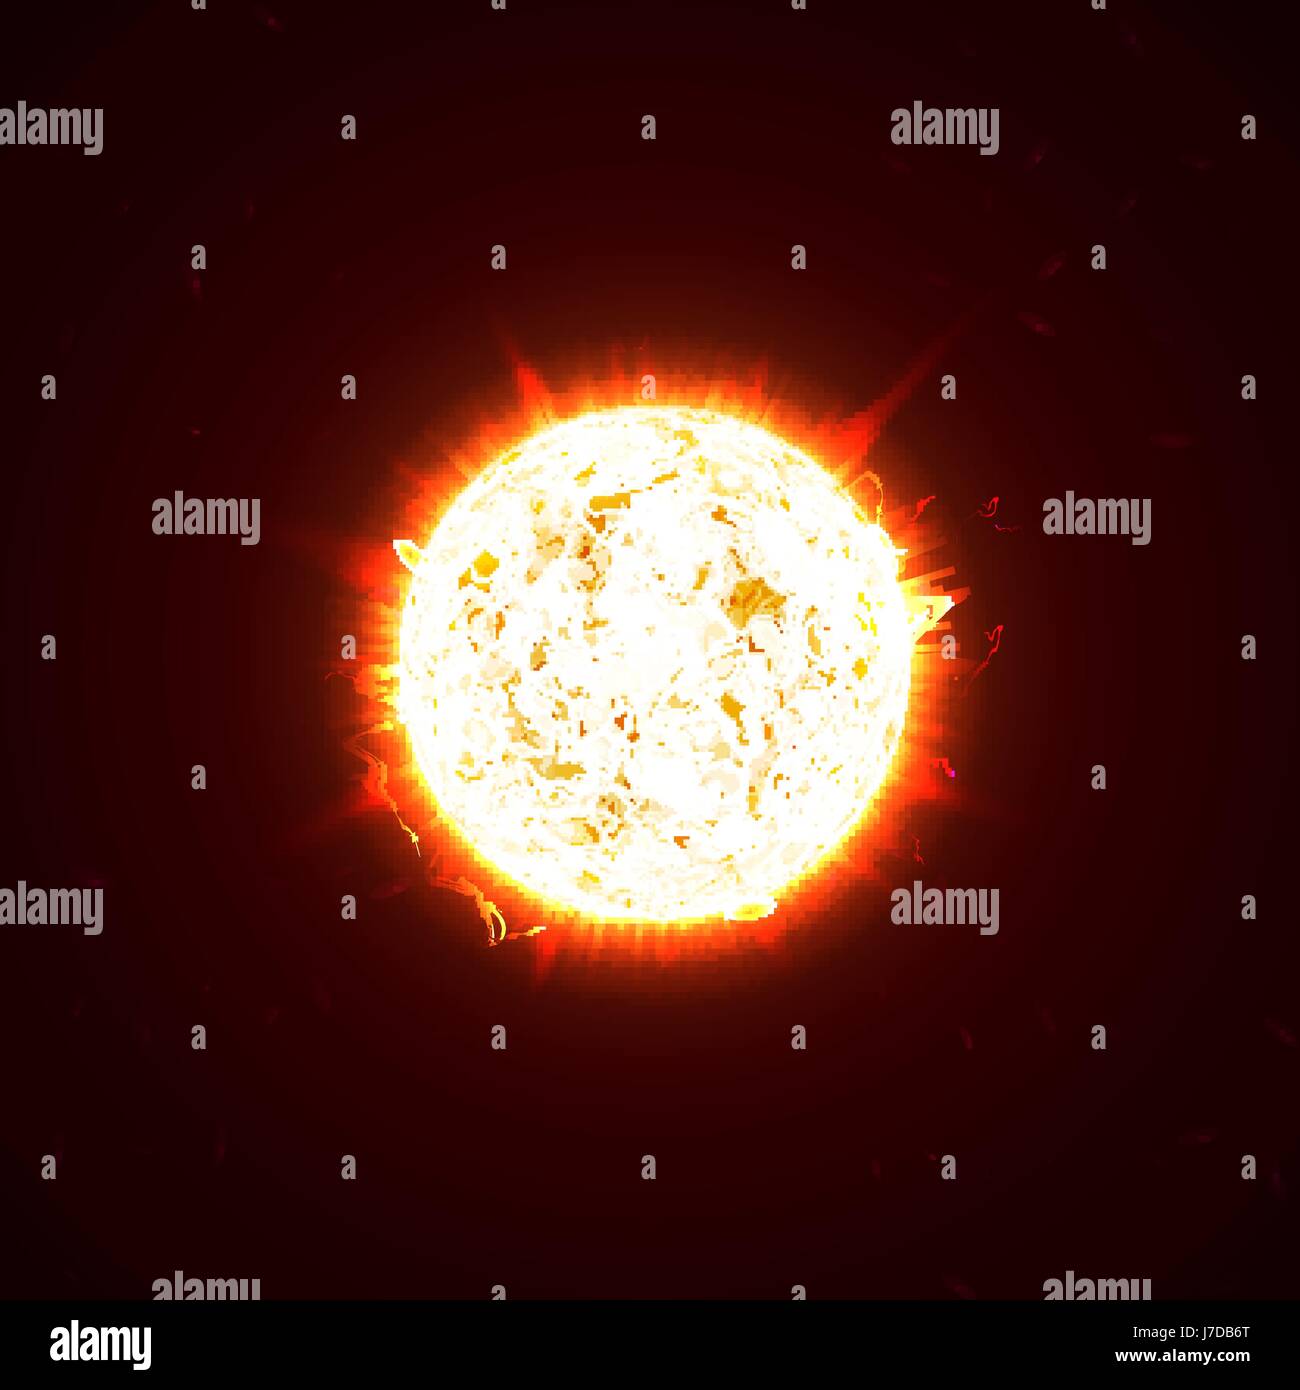 Realistische 3D Sonne brennen, Blitze, Blendung, flare, Funken, Flammen, Hitze und Feuer Strahlen. Orange, heiß, kosmische roten Planeten auf einem schwarzen Hintergrund-Vektor-illustration Stock Vektor